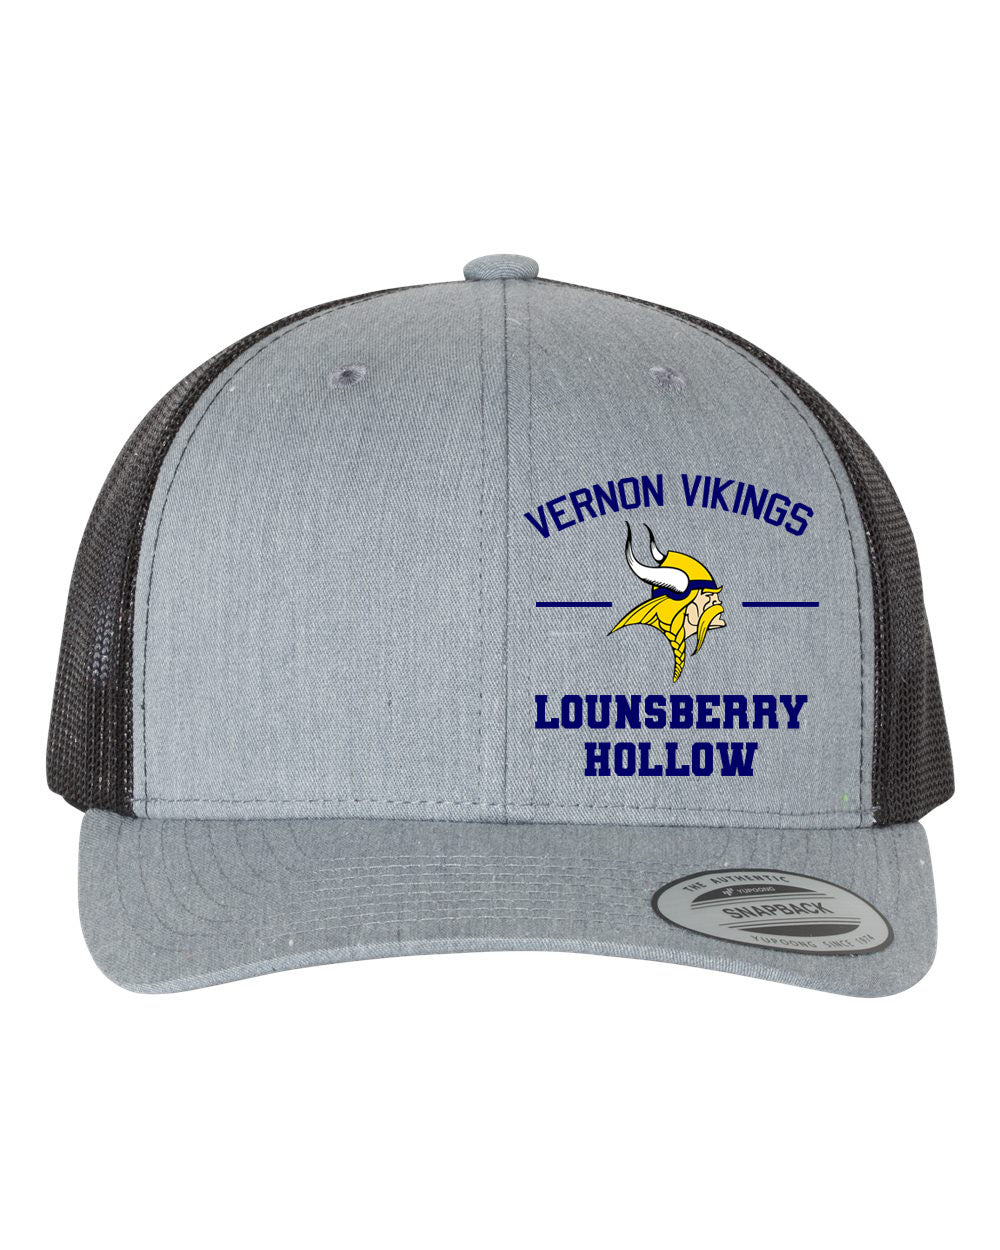 Lounsberry Hollow Design 2 Trucker Hat